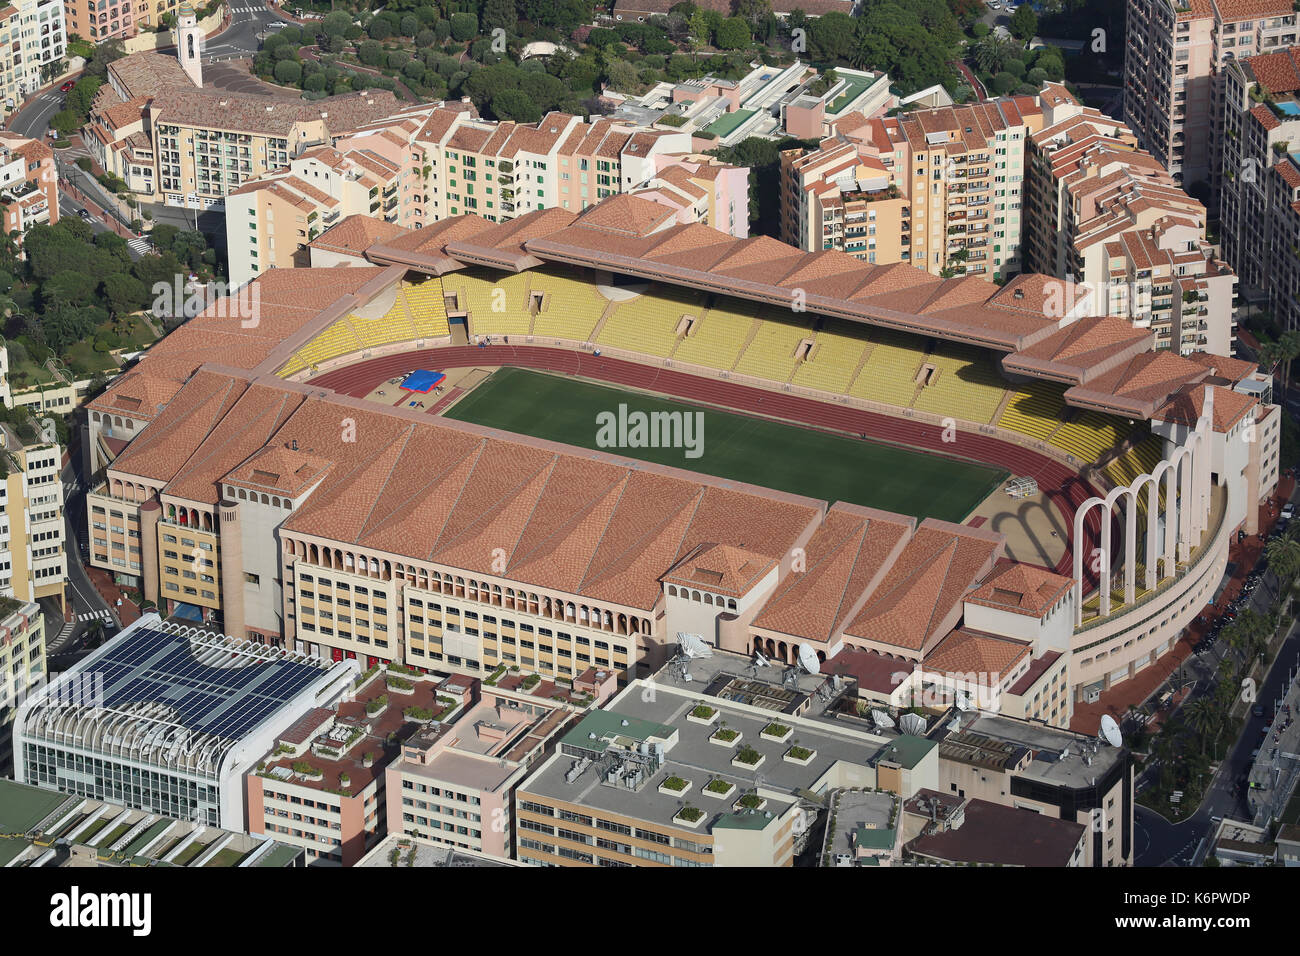 Fontvieille, monaco - 1 giugno 2016: vista aerea di stade louis ii e il  quartiere di Fontvieille nel Principato di Monaco, nel sud della Francia  Foto stock - Alamy